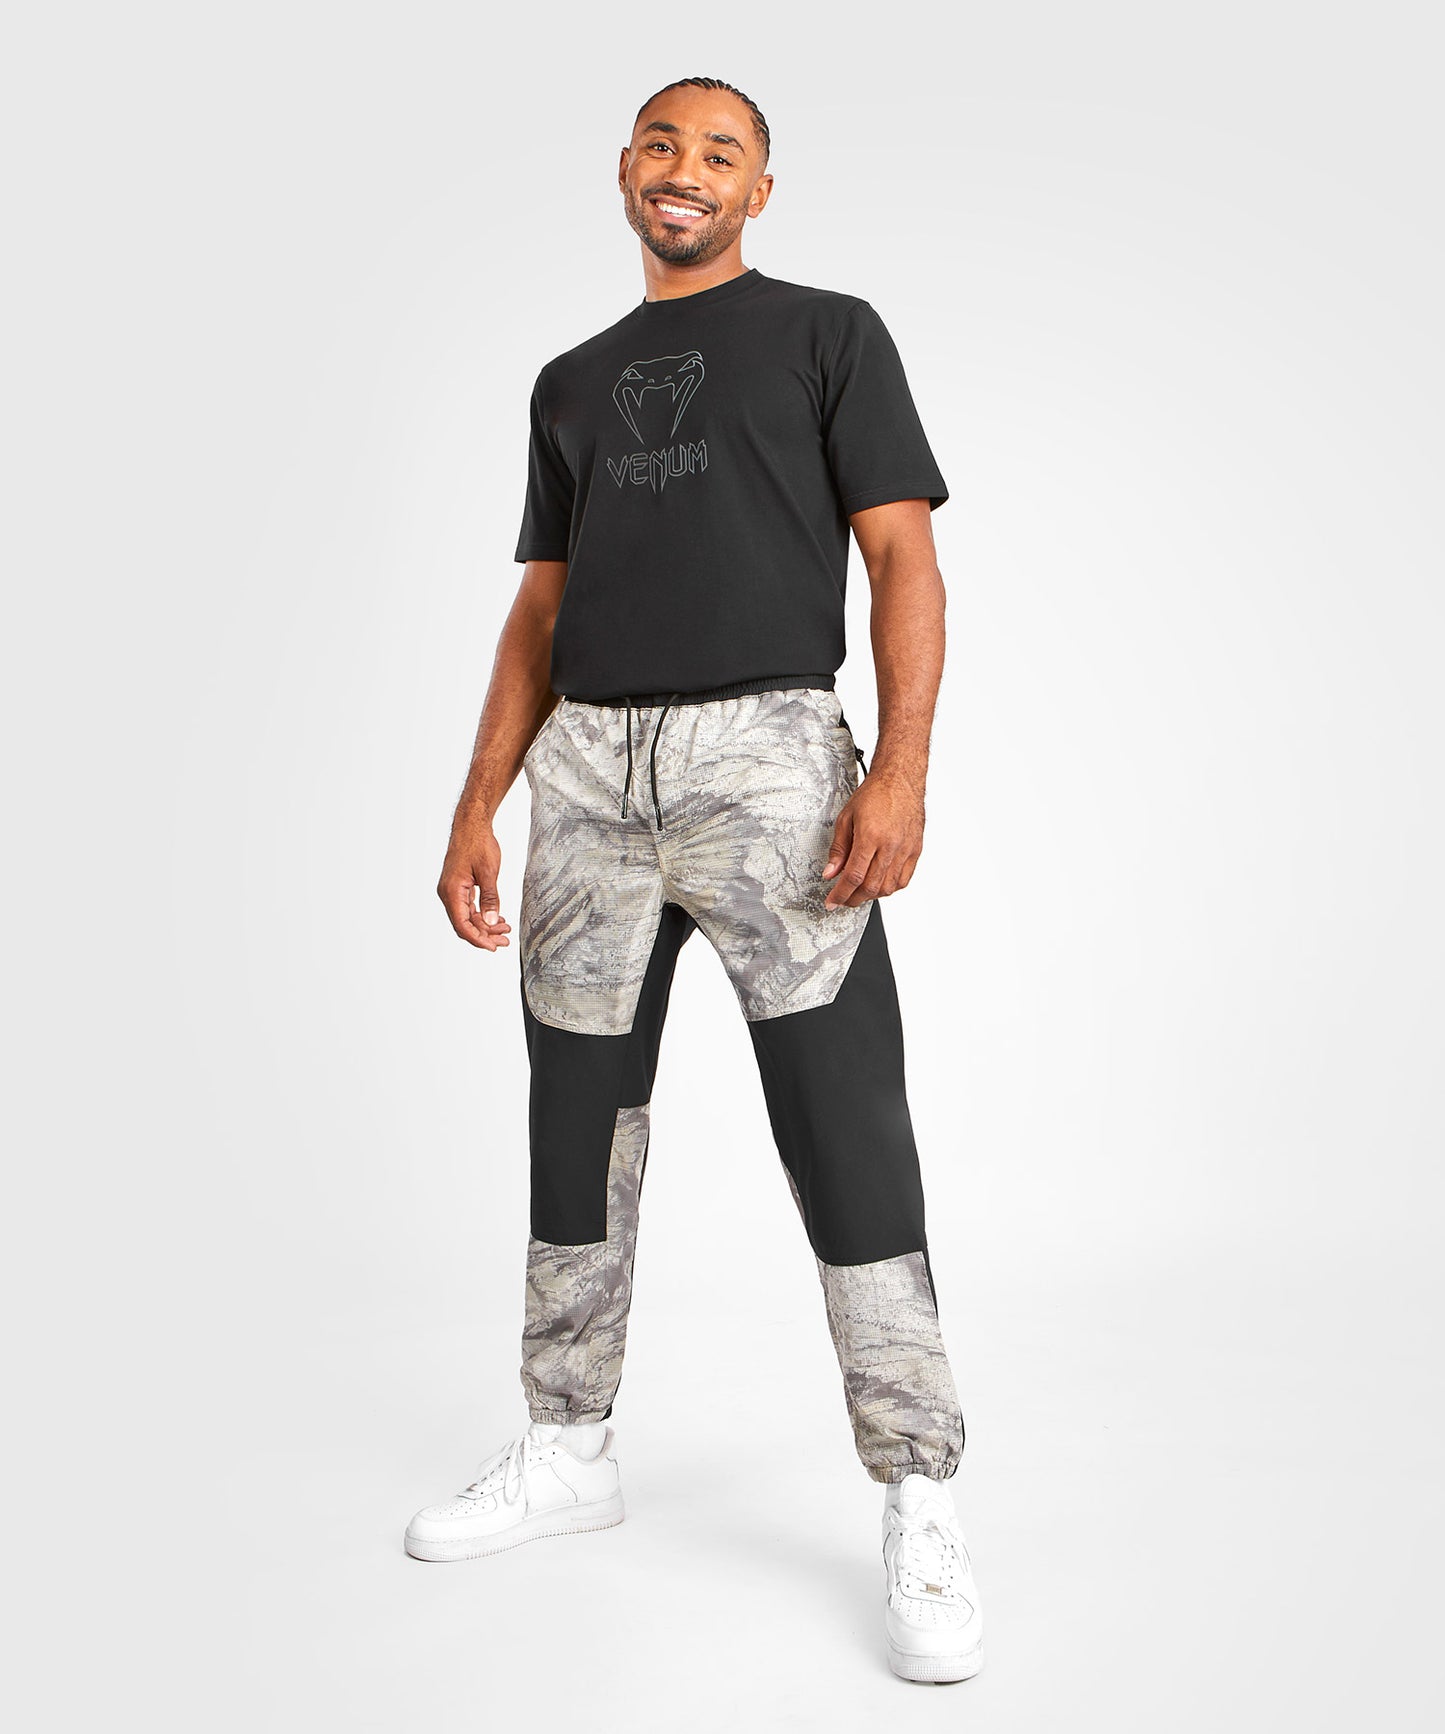 Venum Laser XT Realtree Pantalone da Jogging - Nero/Deserto Camo